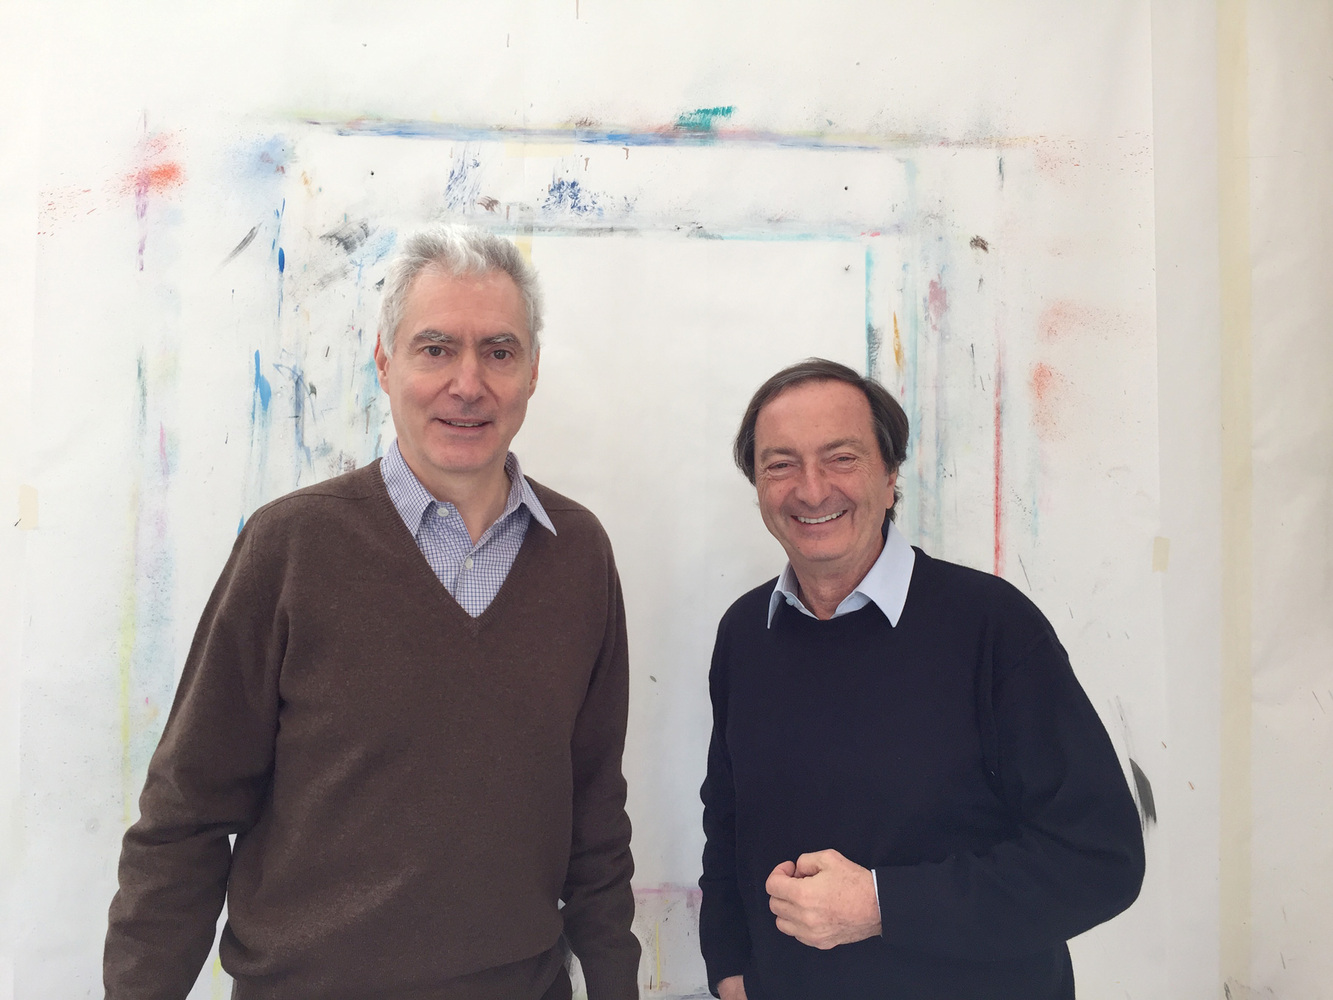 Alain SECHAS - Trottinette, 2018 -  Première rencontre de Michel-Edouard Leclerc et Alain Séchas dans l'atelier parisien de l'artiste, le 6 février 2017